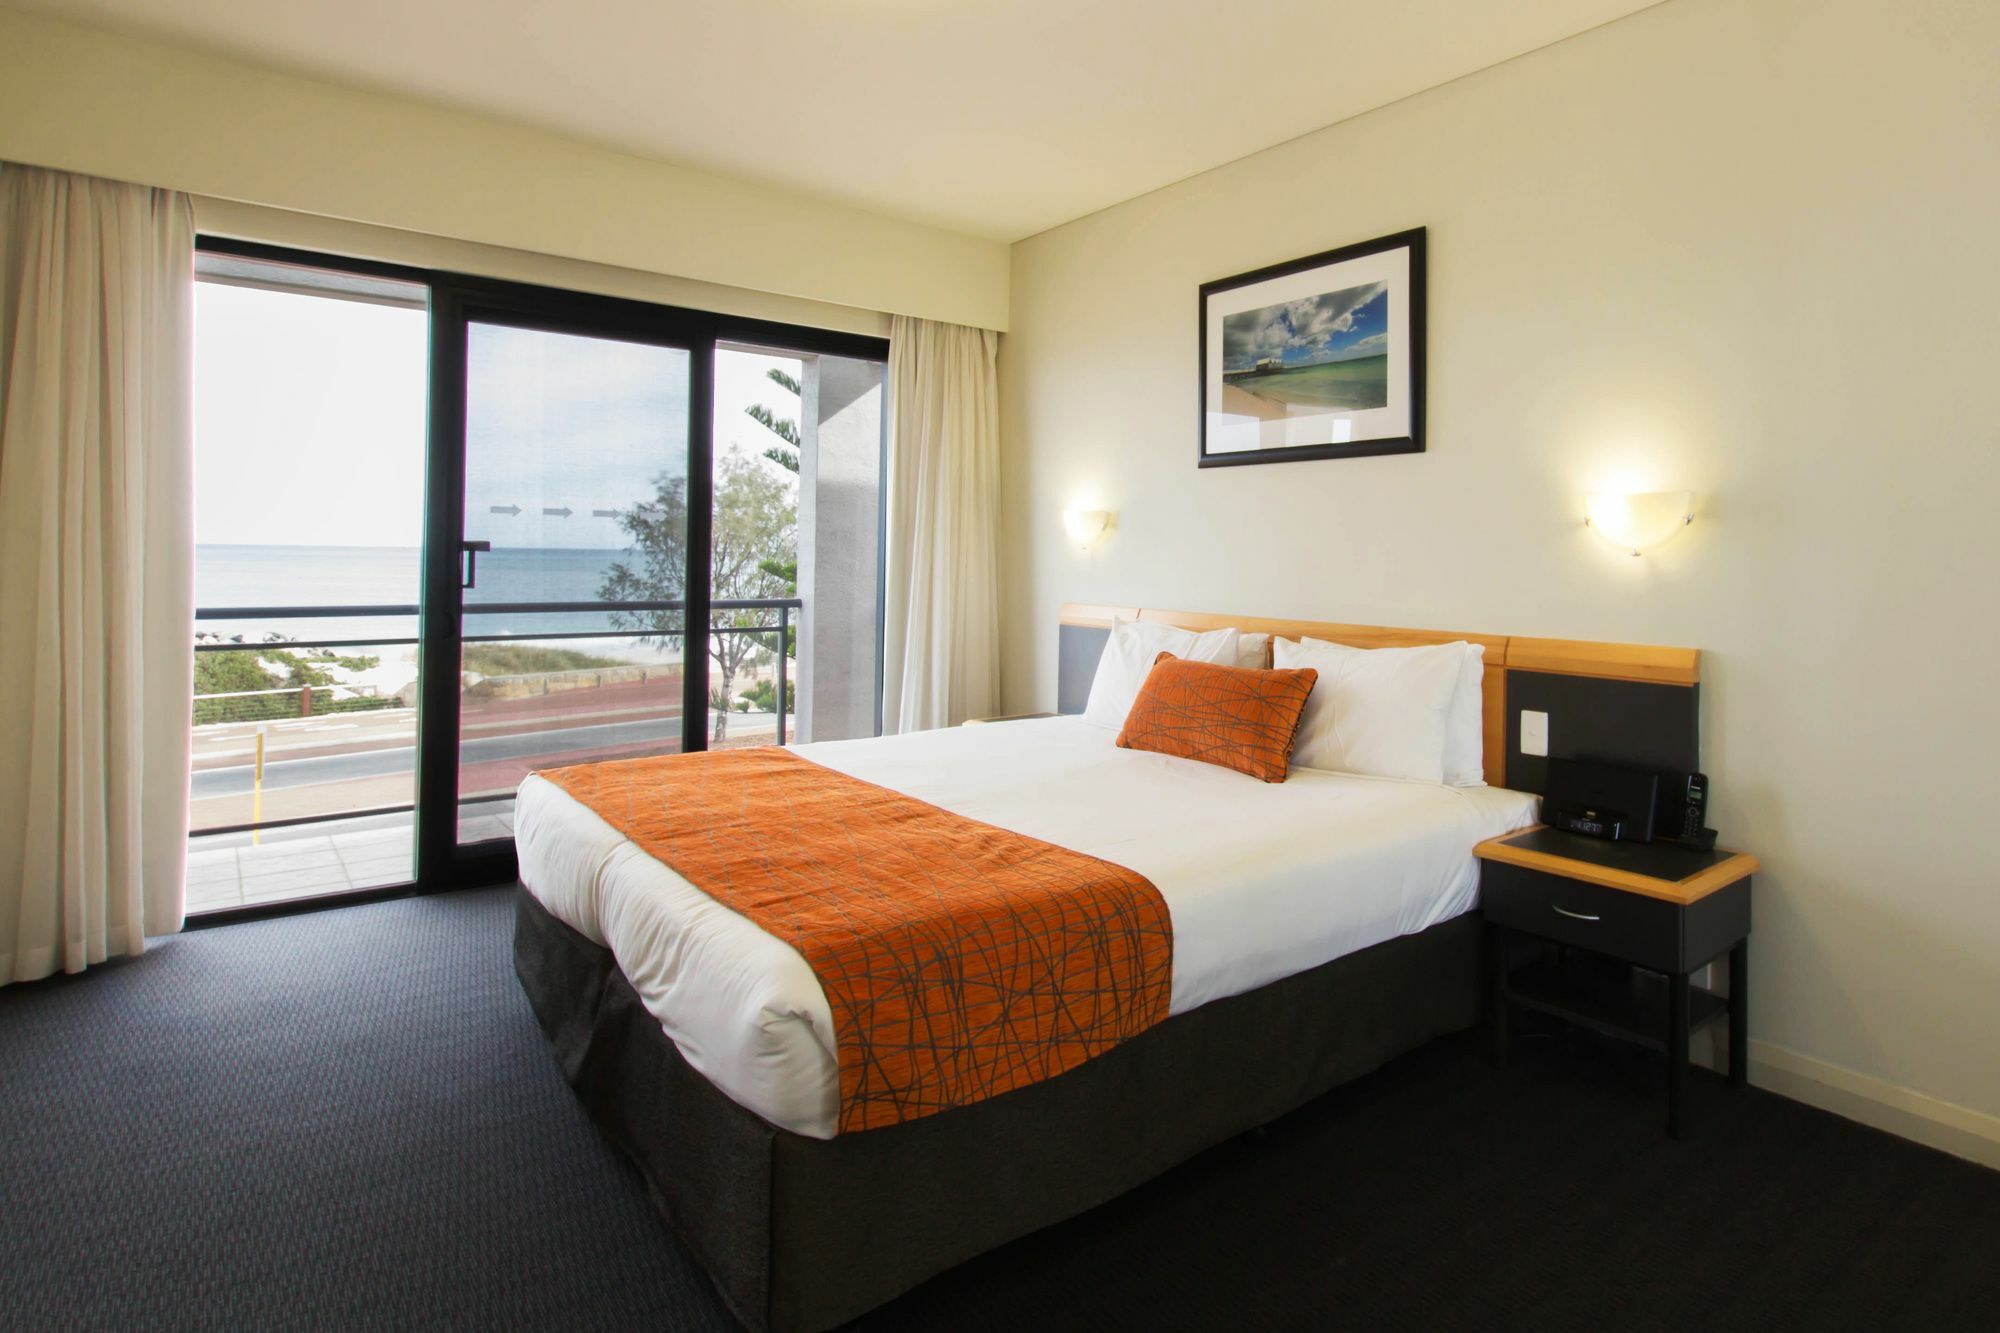 Quality Resort Sorrento Beach Perth Exterior photo